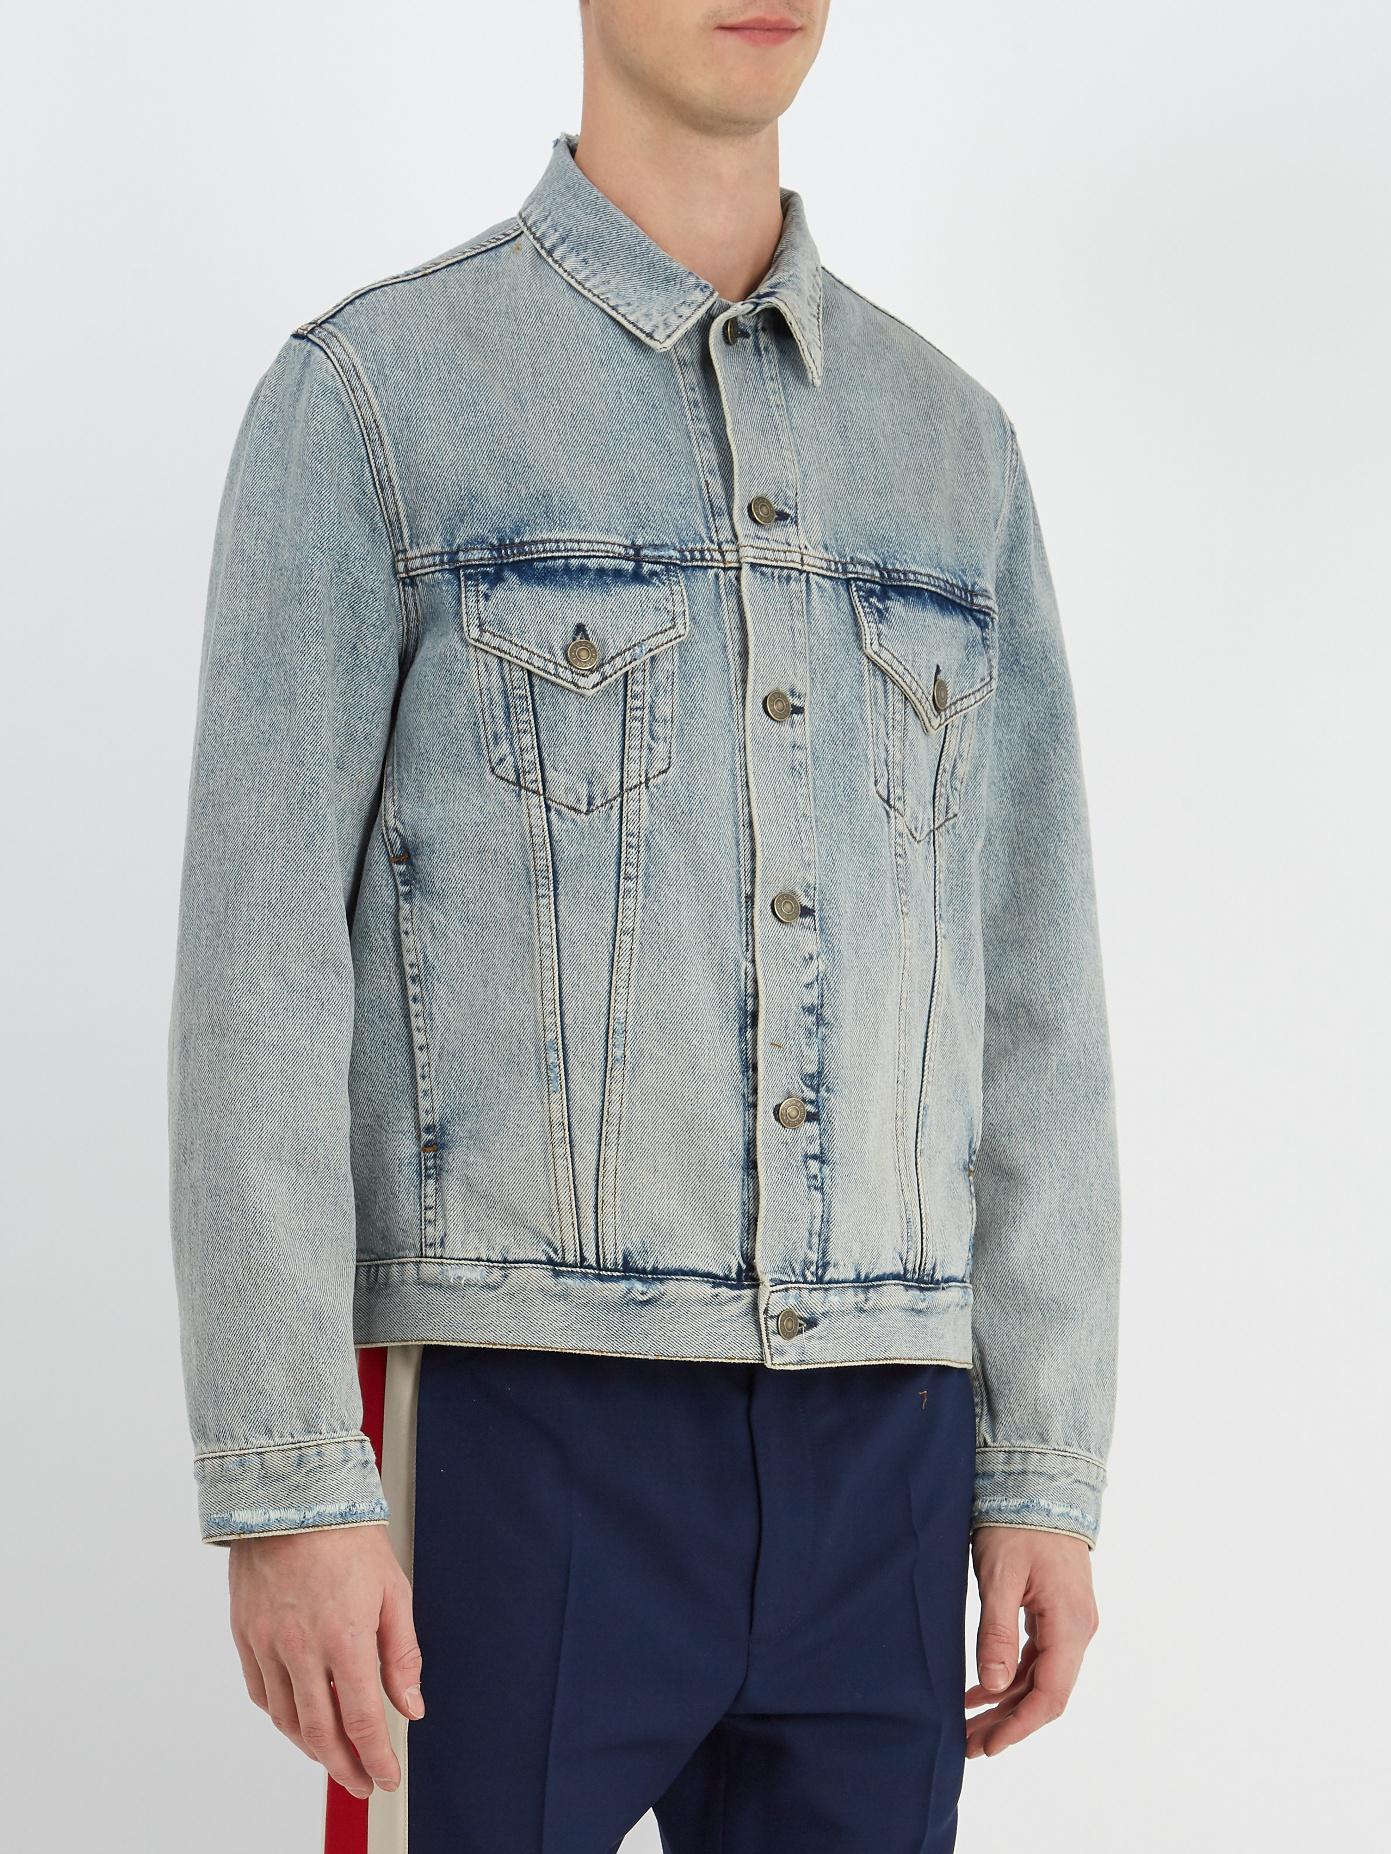 Gucci Teddy-appliqué Denim Jacket in Blue for Men - Lyst